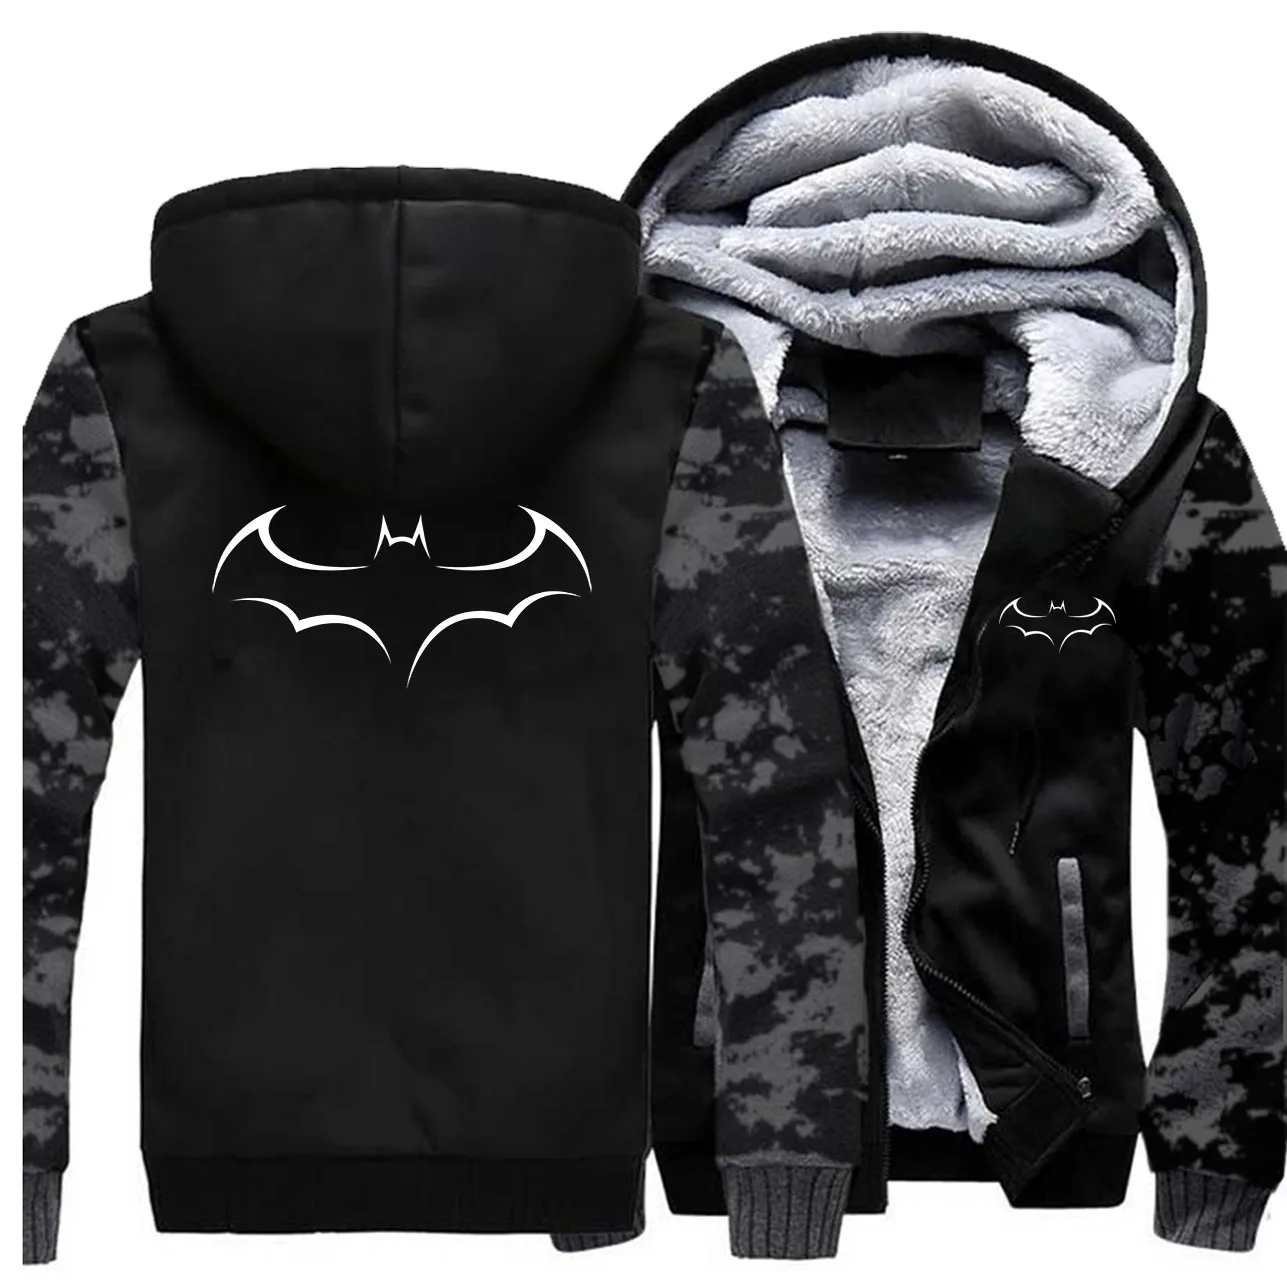 Бэтмен, Брюс Уэйн куртки мужские толстовки свитер супергерой зимние толстые пальто Feece на молнии Спортивная одежда камуфляж супергерой плюс размер - Цвет: Vintage Gray 5